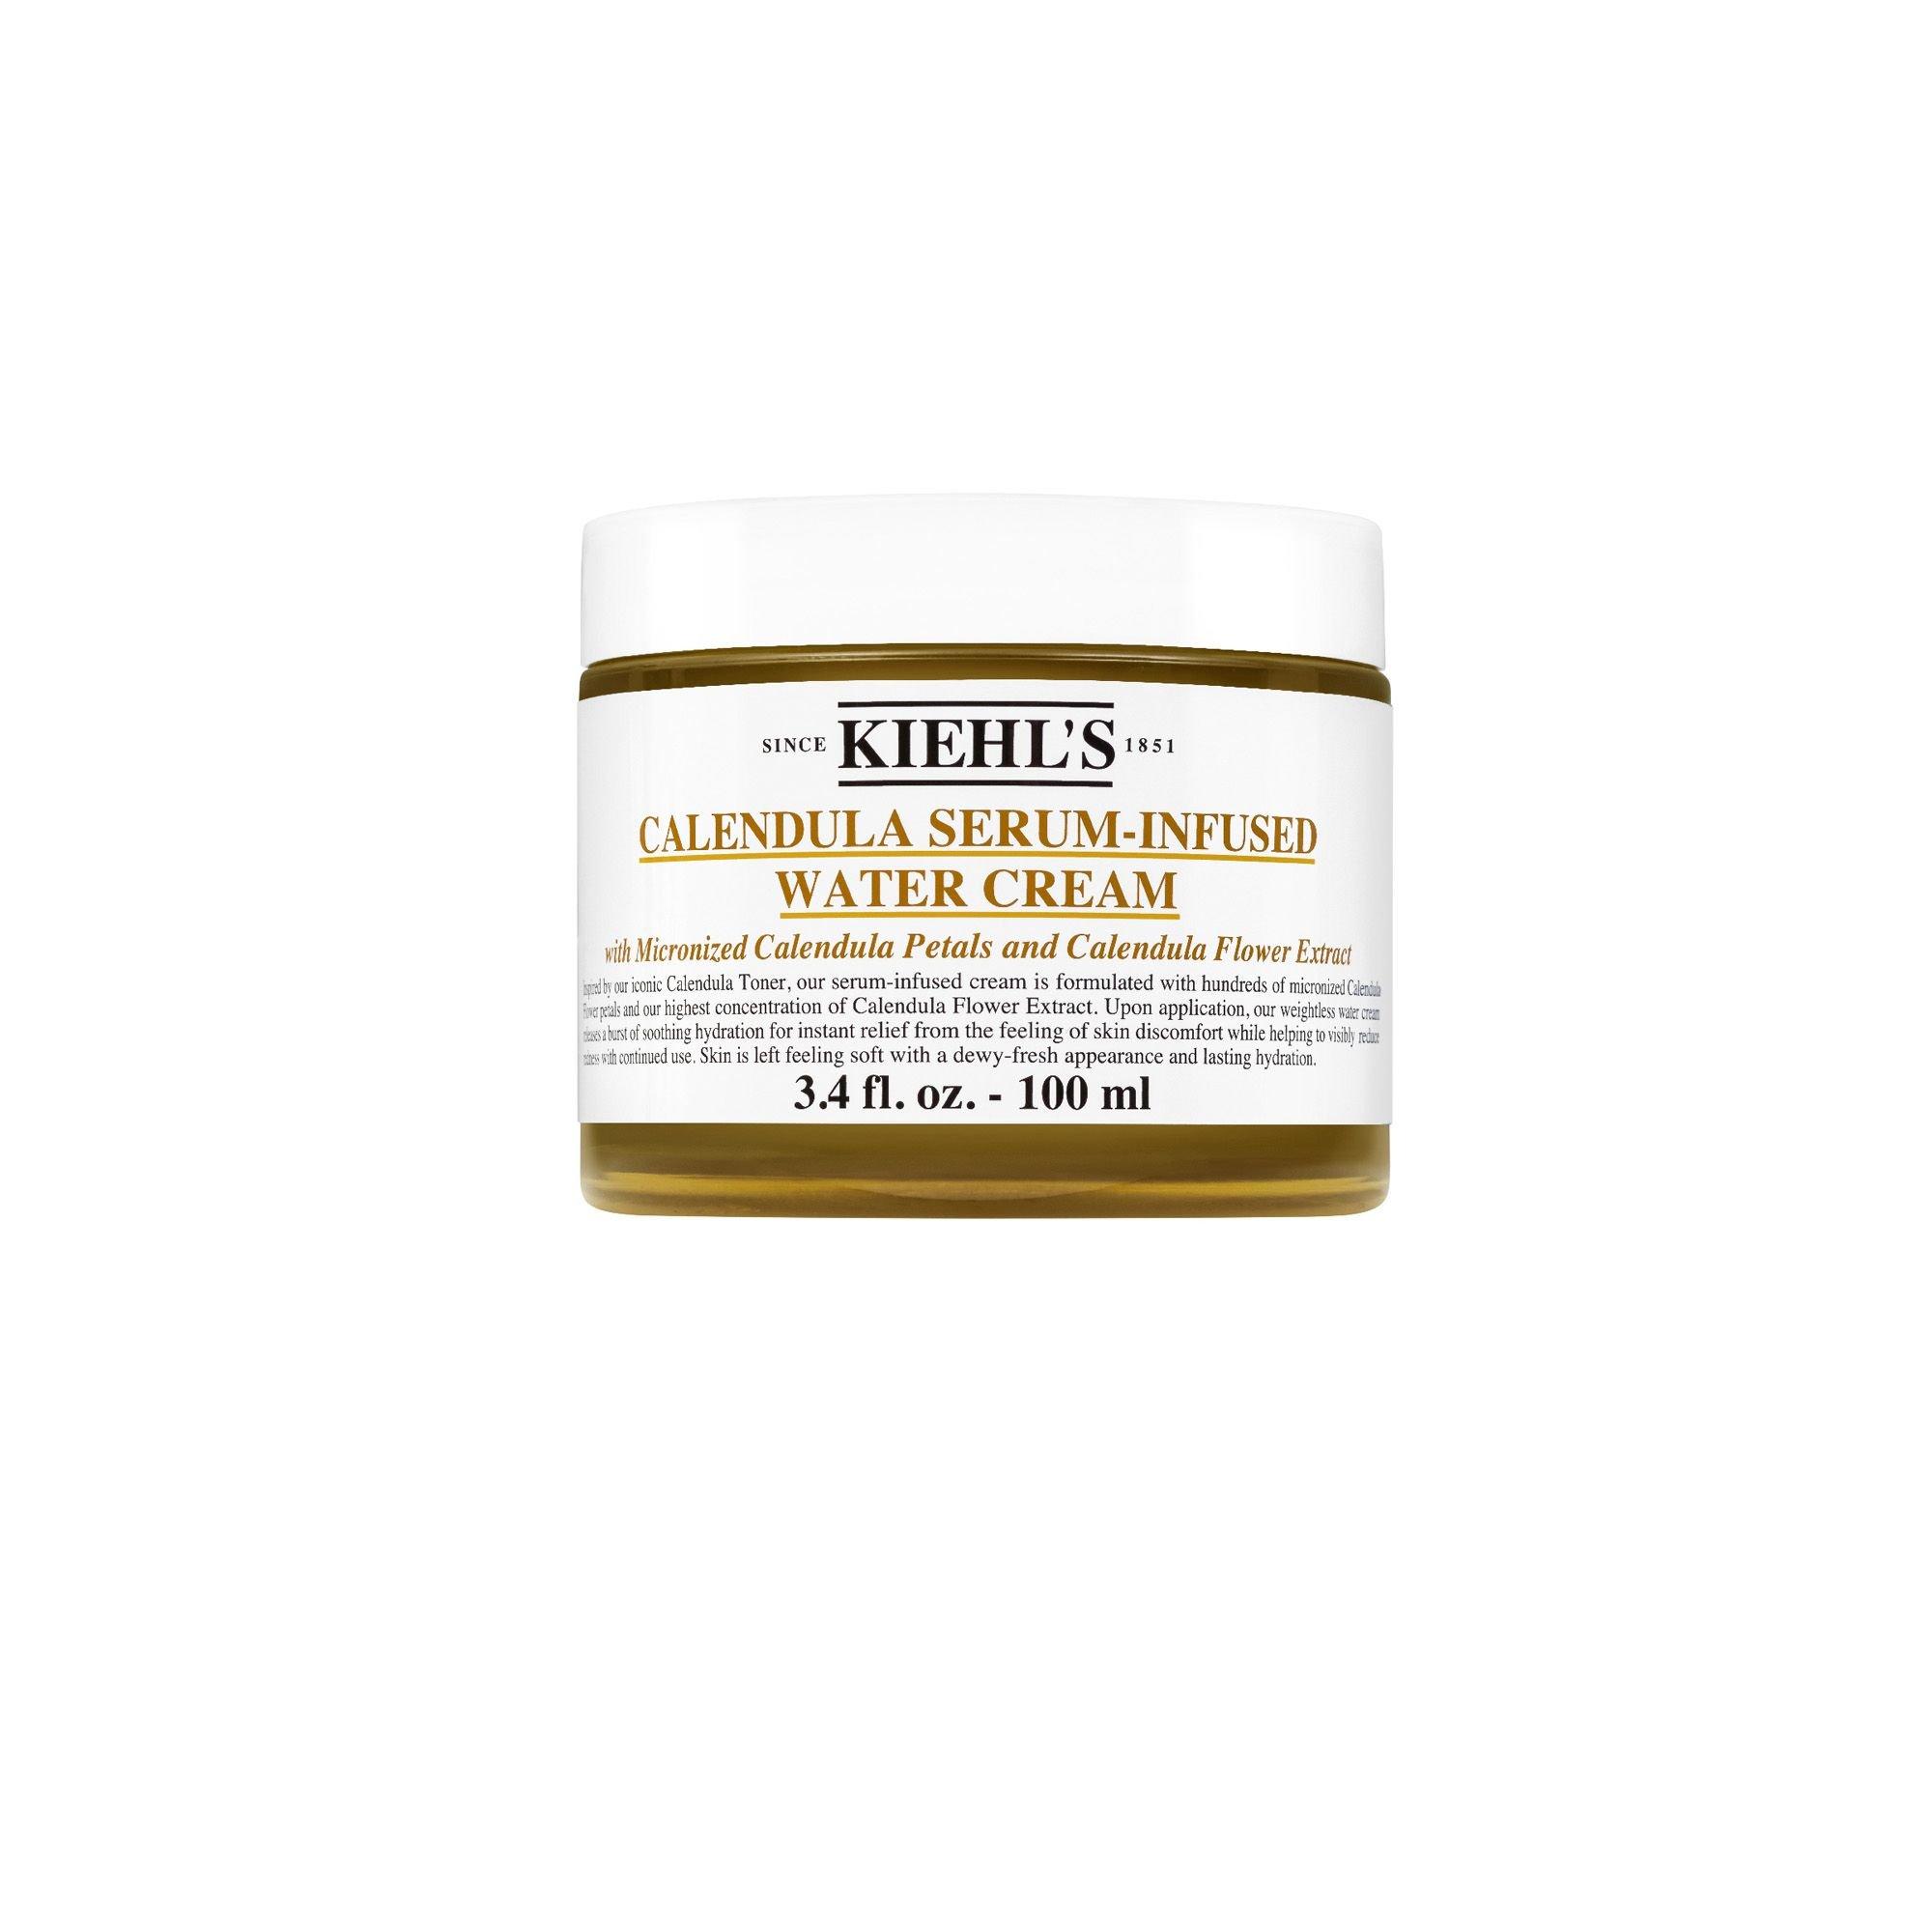 Image of Kiehl's Calendula Serum-Infused Water Cream - Federleichte Gesichtscreme mit konzentriertem Calendula-Serum - ml#133/100 ml